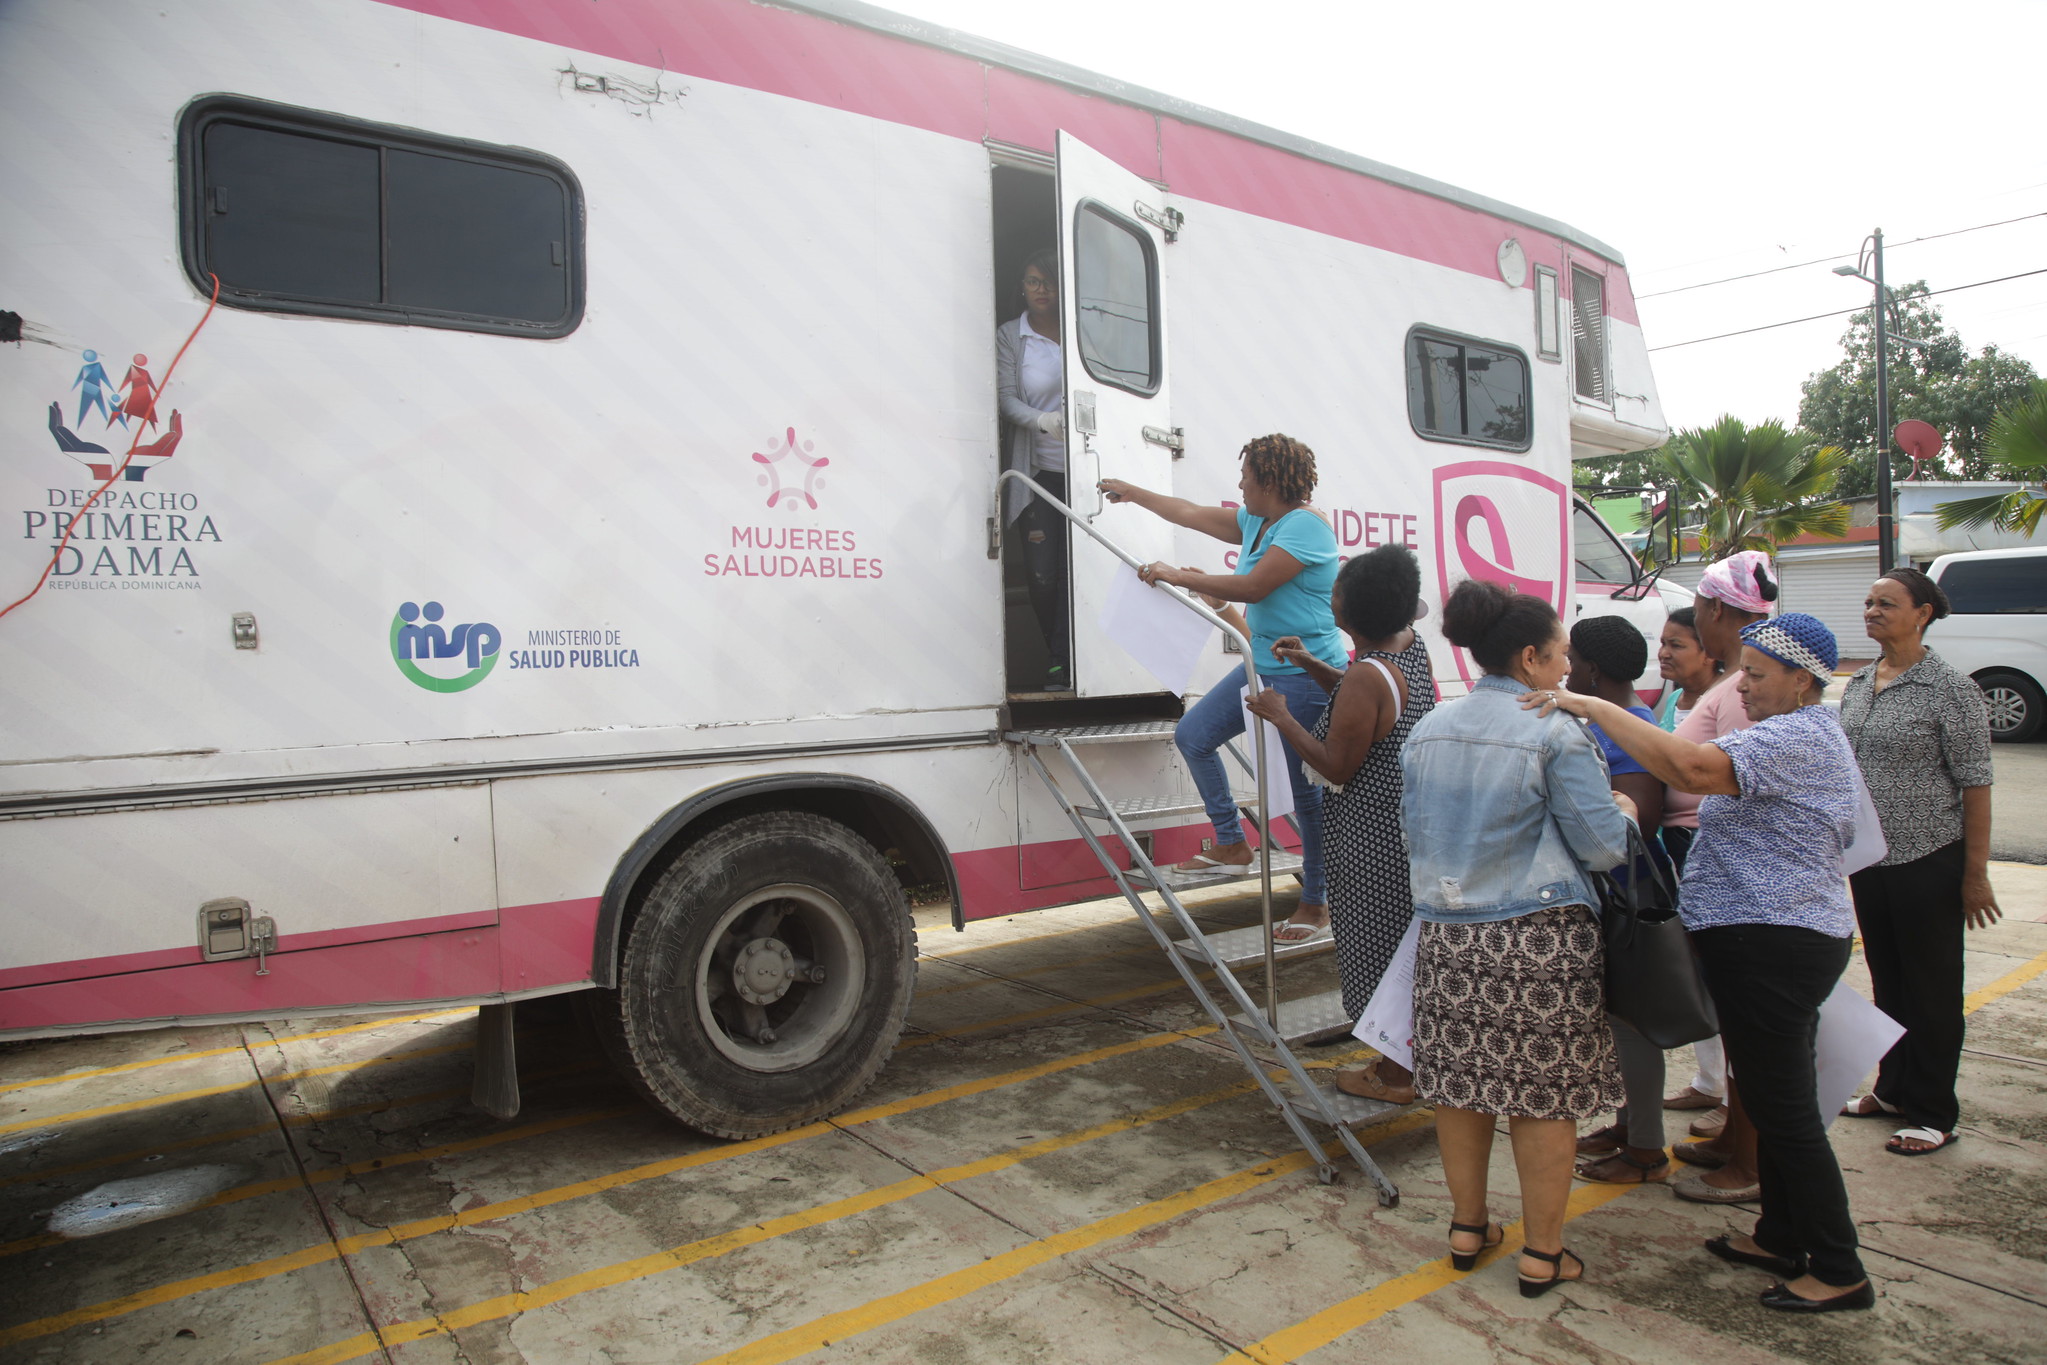 REPÚBLICA DOMINICANA: En 2019, mujeres de varios puntos del país fueron beneficiadas con más de 15 mil mamografías a través Despacho Primera Dama